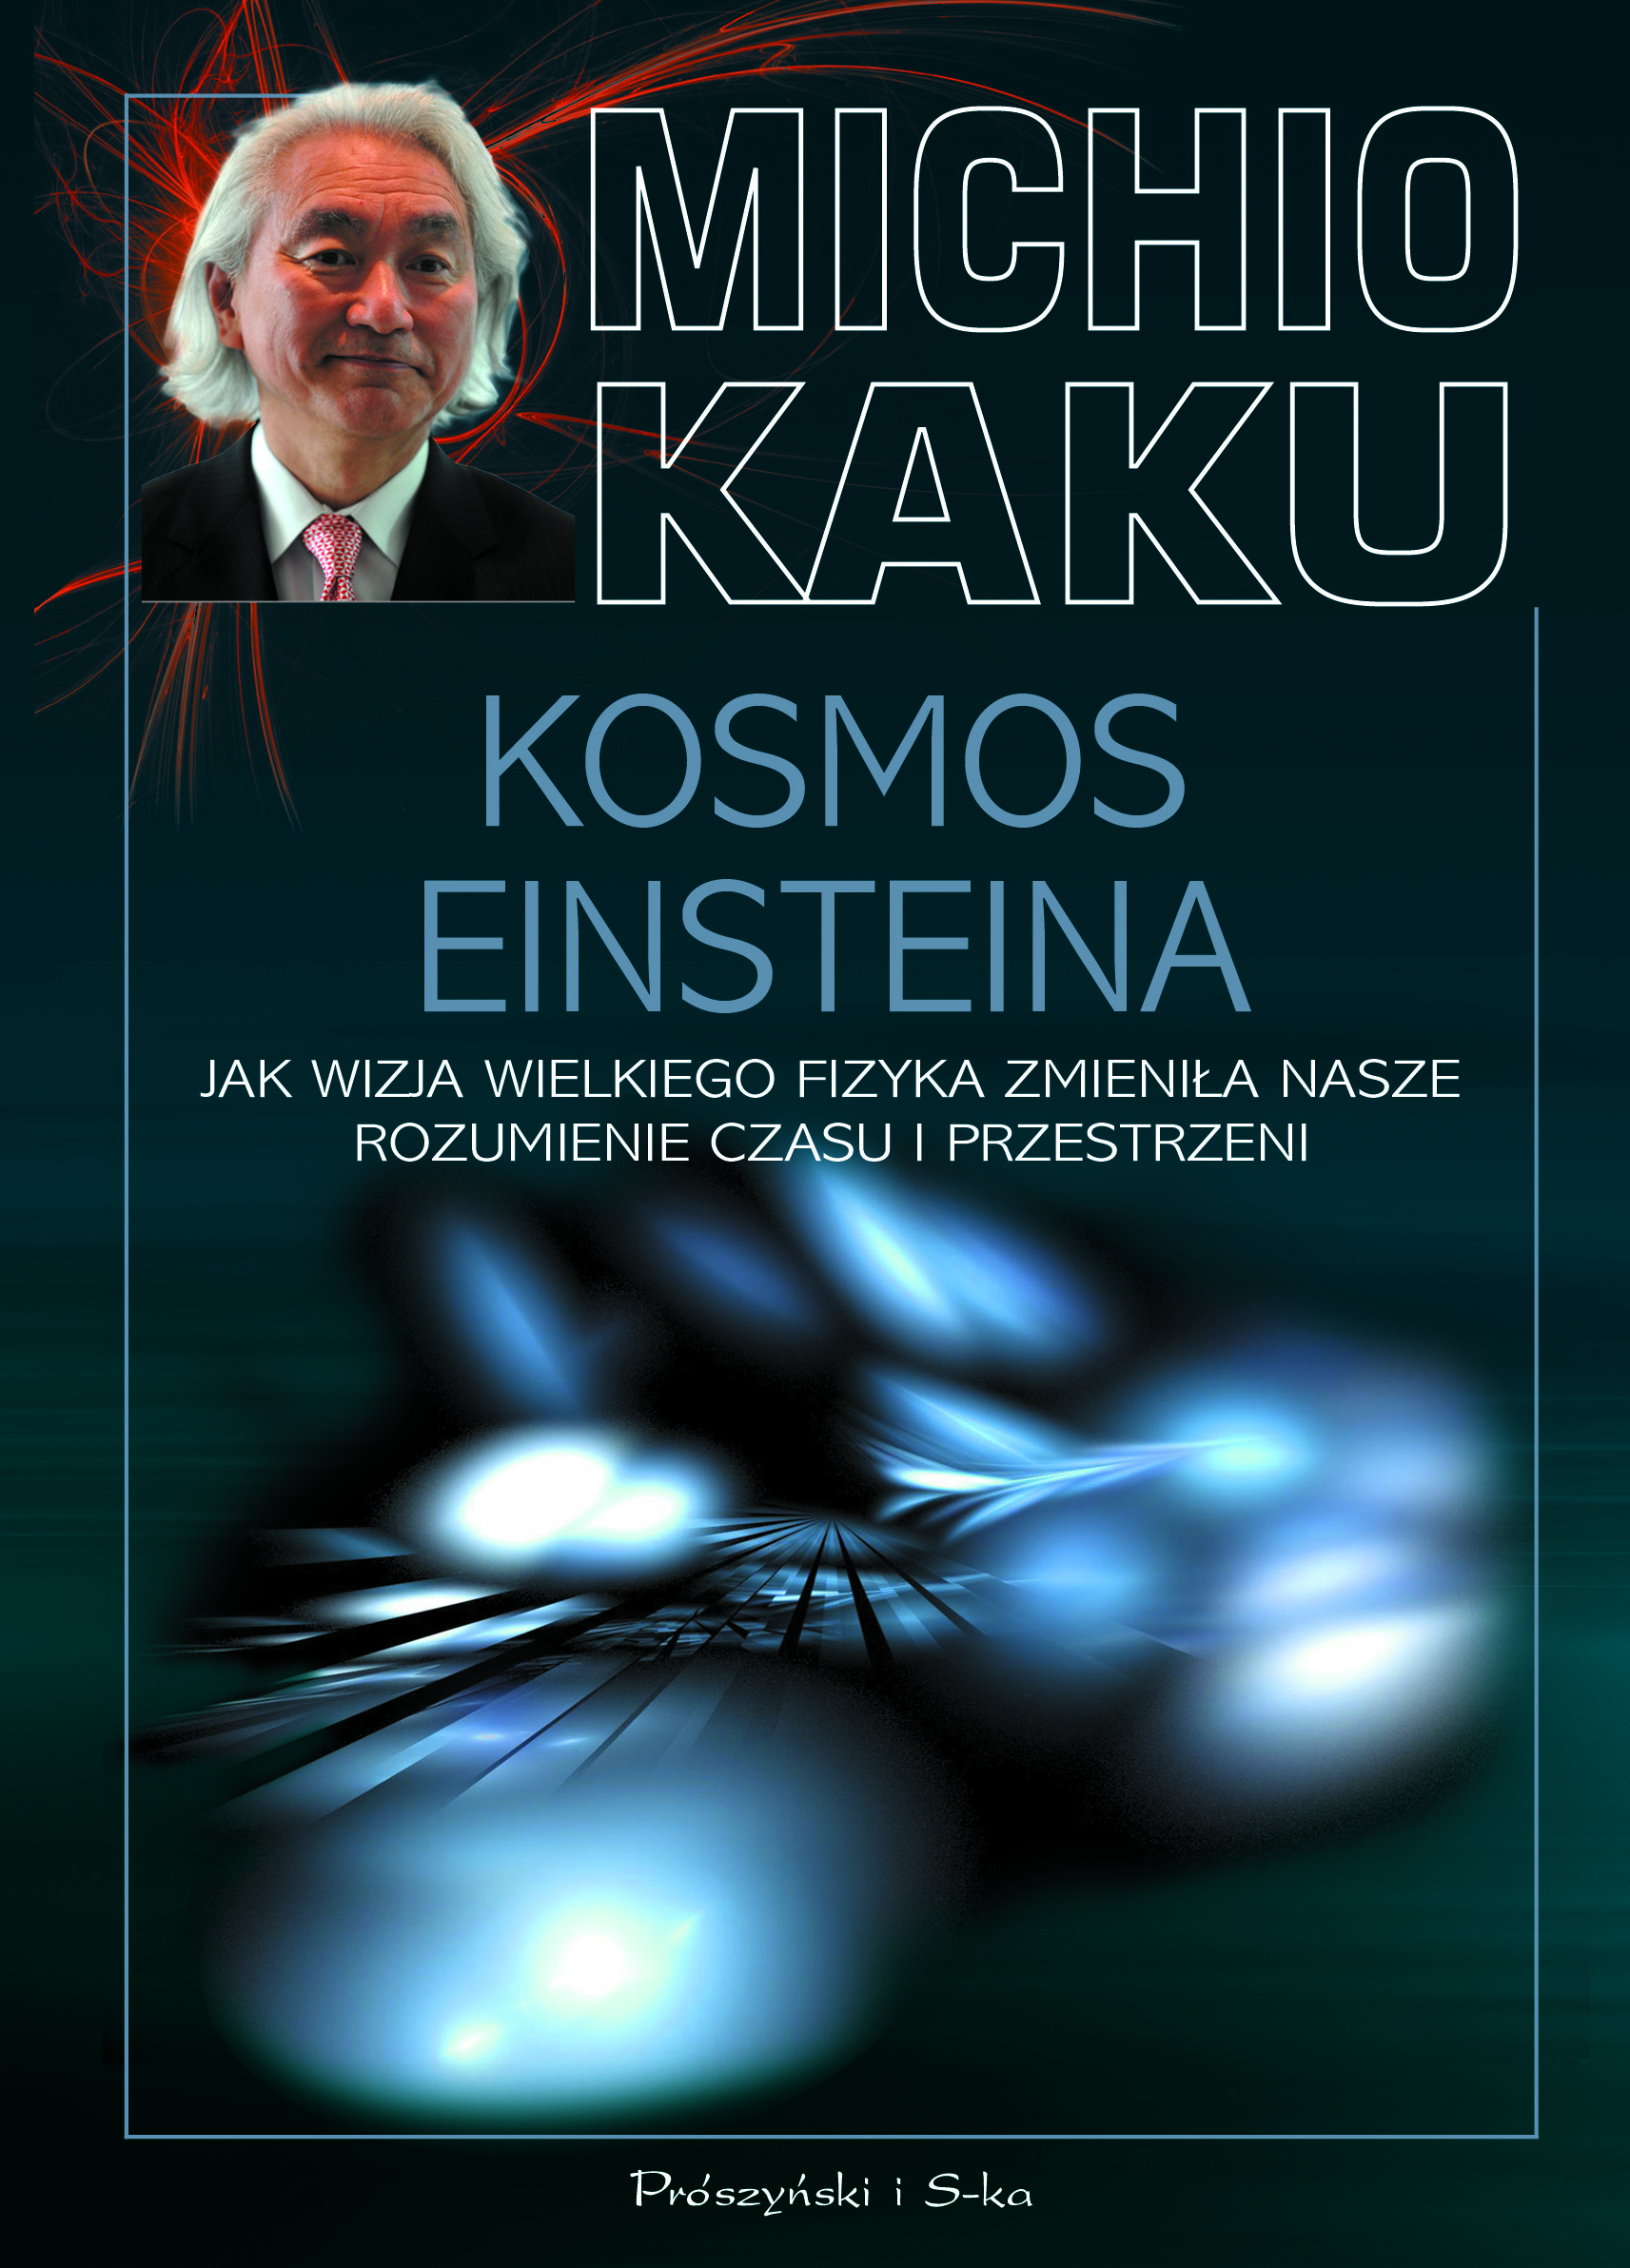 Michio Kaku, „Kosmos Einsteina”, okładka książki (źródło: materiały prasowe)